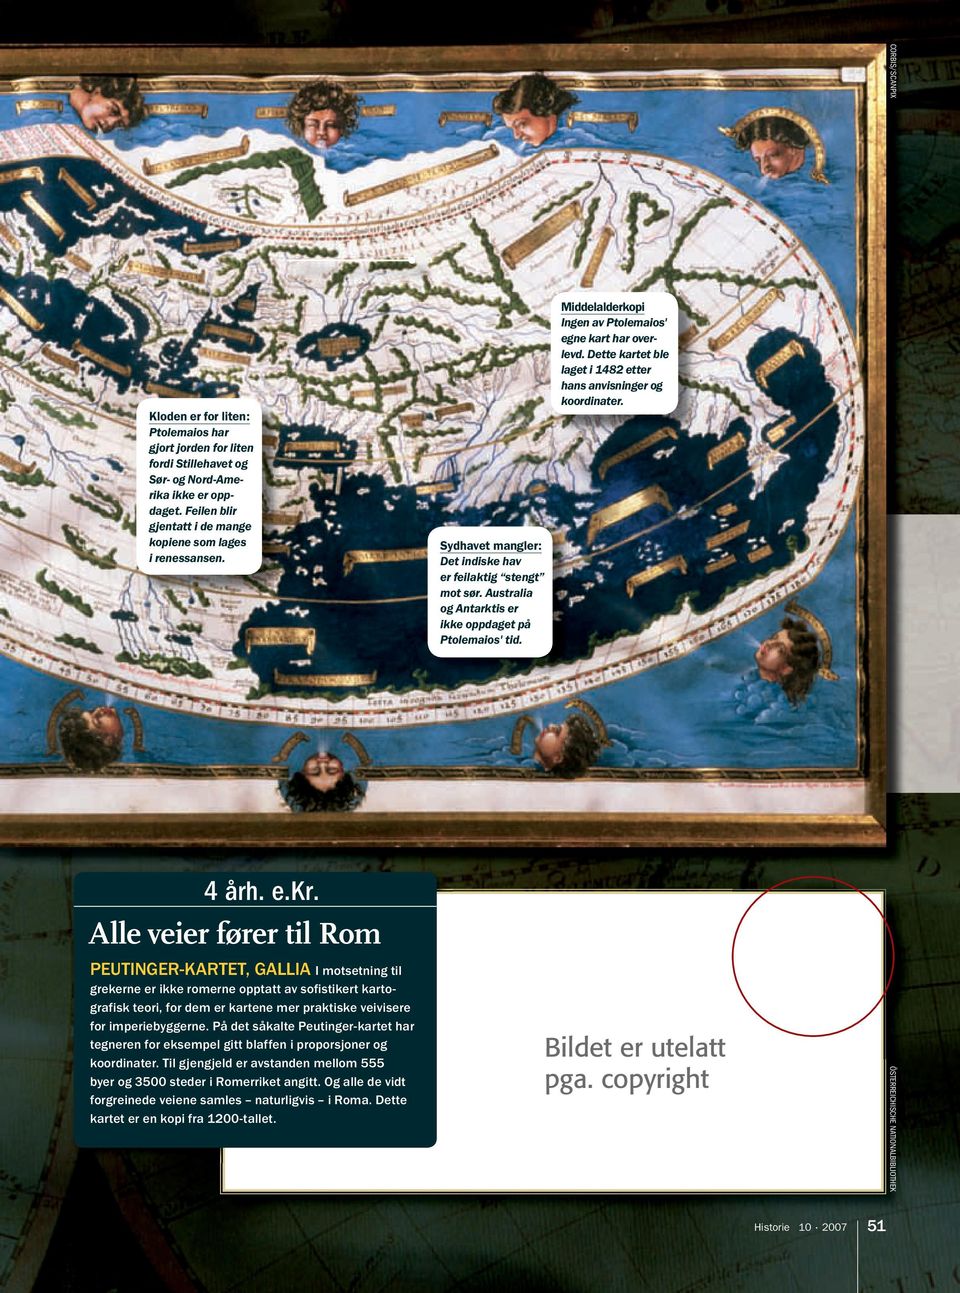 Dette kartet ble laget i 1482 etter hans anvisninger og koordinater. 4 årh. e.kr.